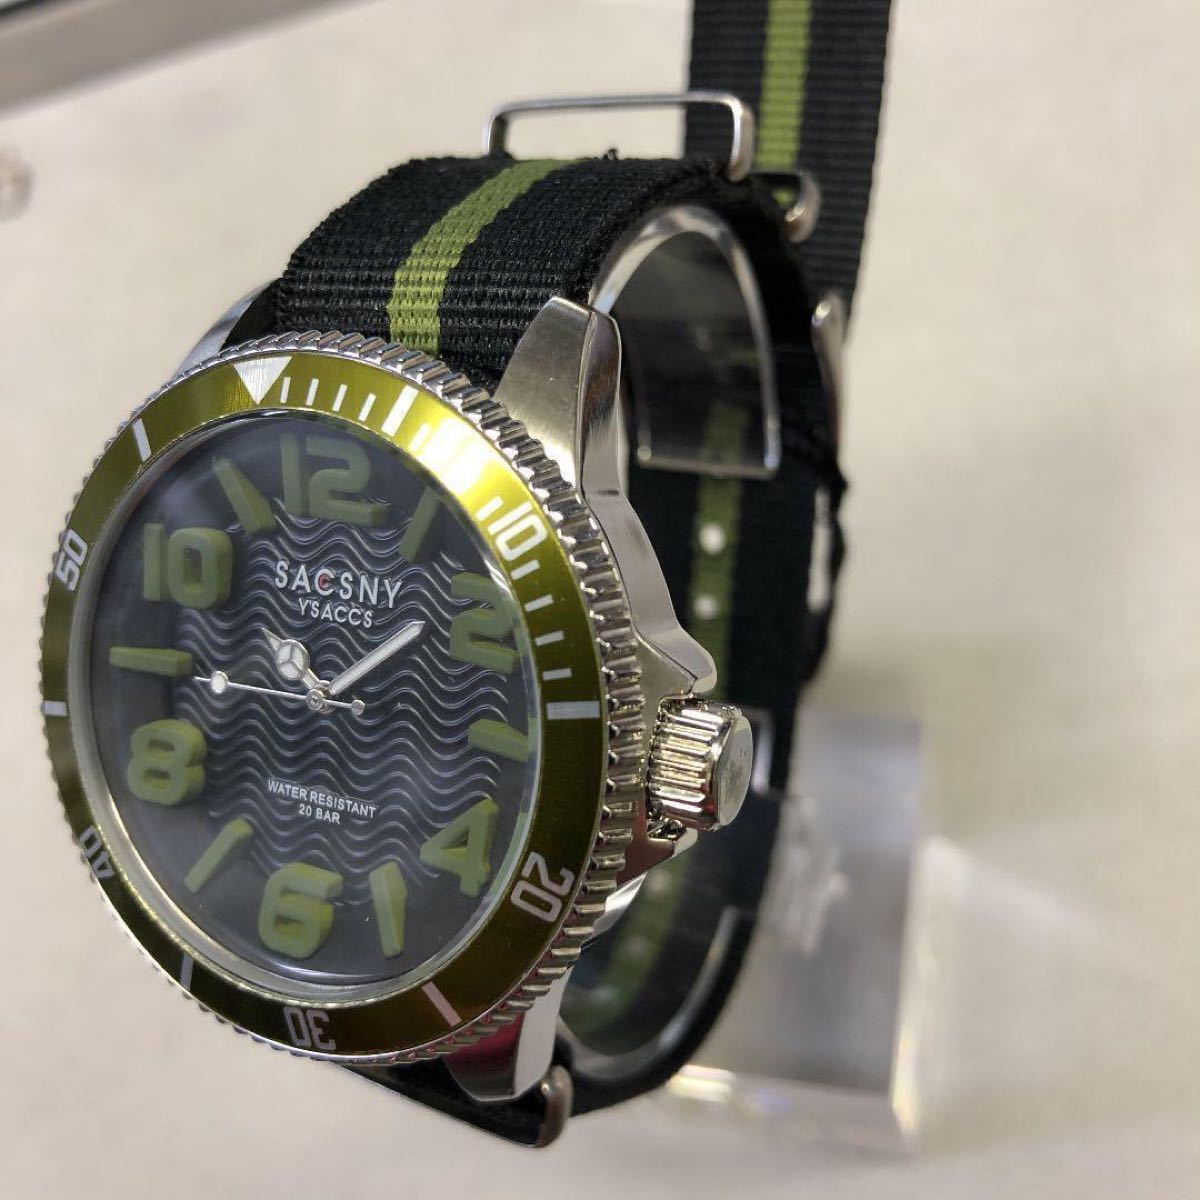 サクスニーイザック ダイバーズ メンズ20気圧防水 腕時計 メンズ腕時計 腕時計